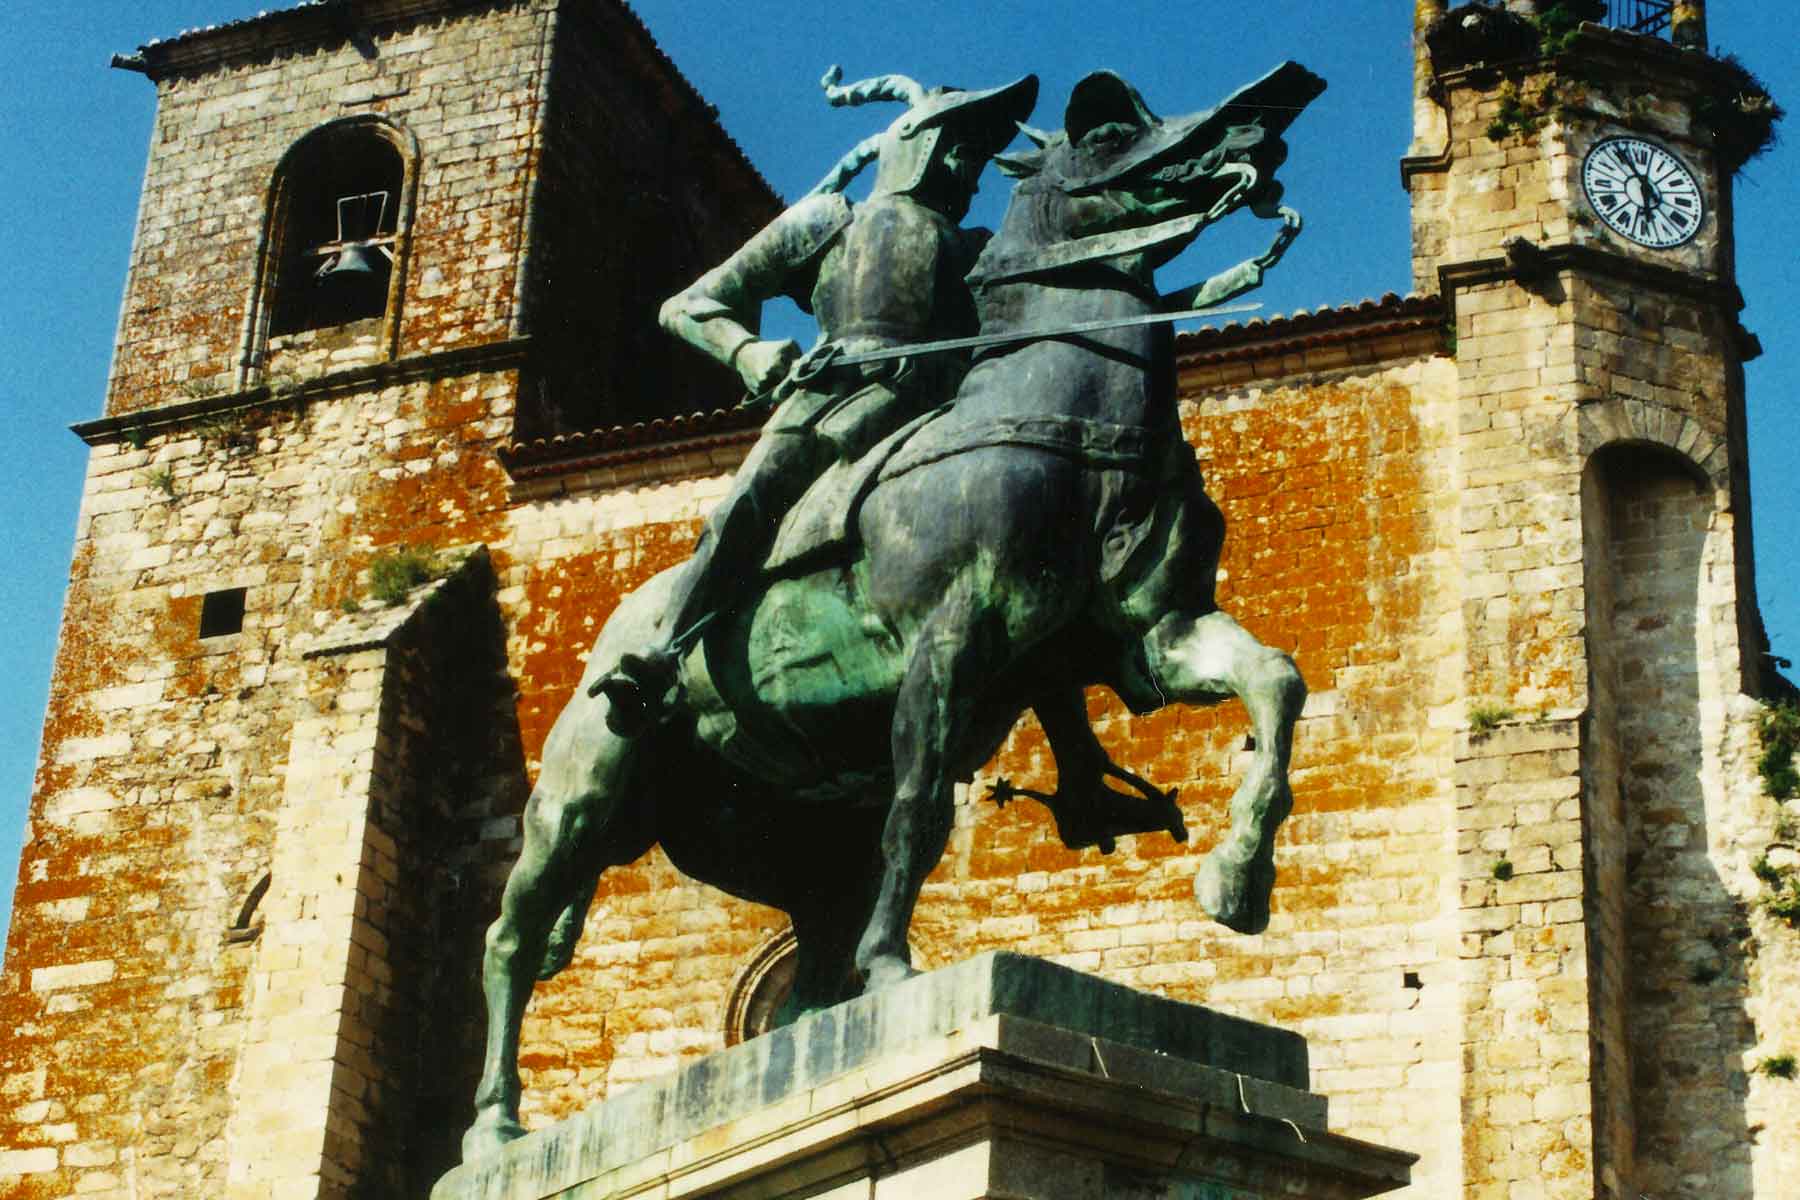 Francisco Pizarro Statue - Trujillo Spain - Study Abroad Journal - Steven Andrew Martin